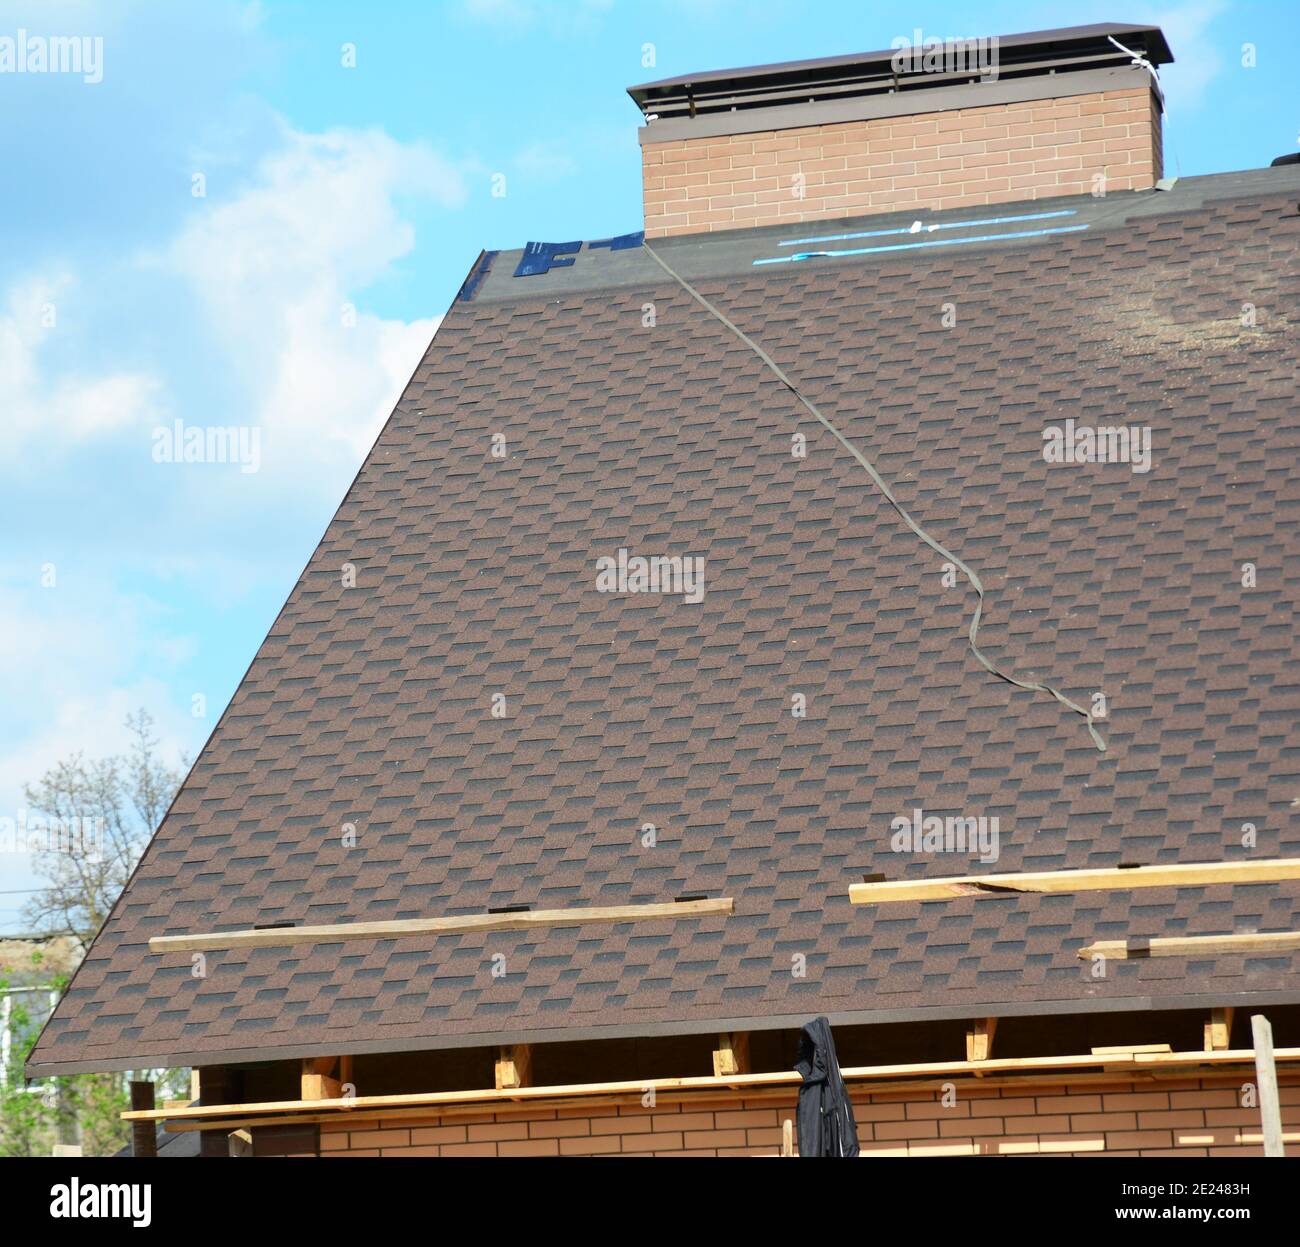 Unvollständiges Dach mit Asphaltschindeln Installation auf Unterlage. Asphalt Schindelfliesen auf dem Grat des Daches in der Nähe eines Schornsteins mit blinkenden. Stockfoto